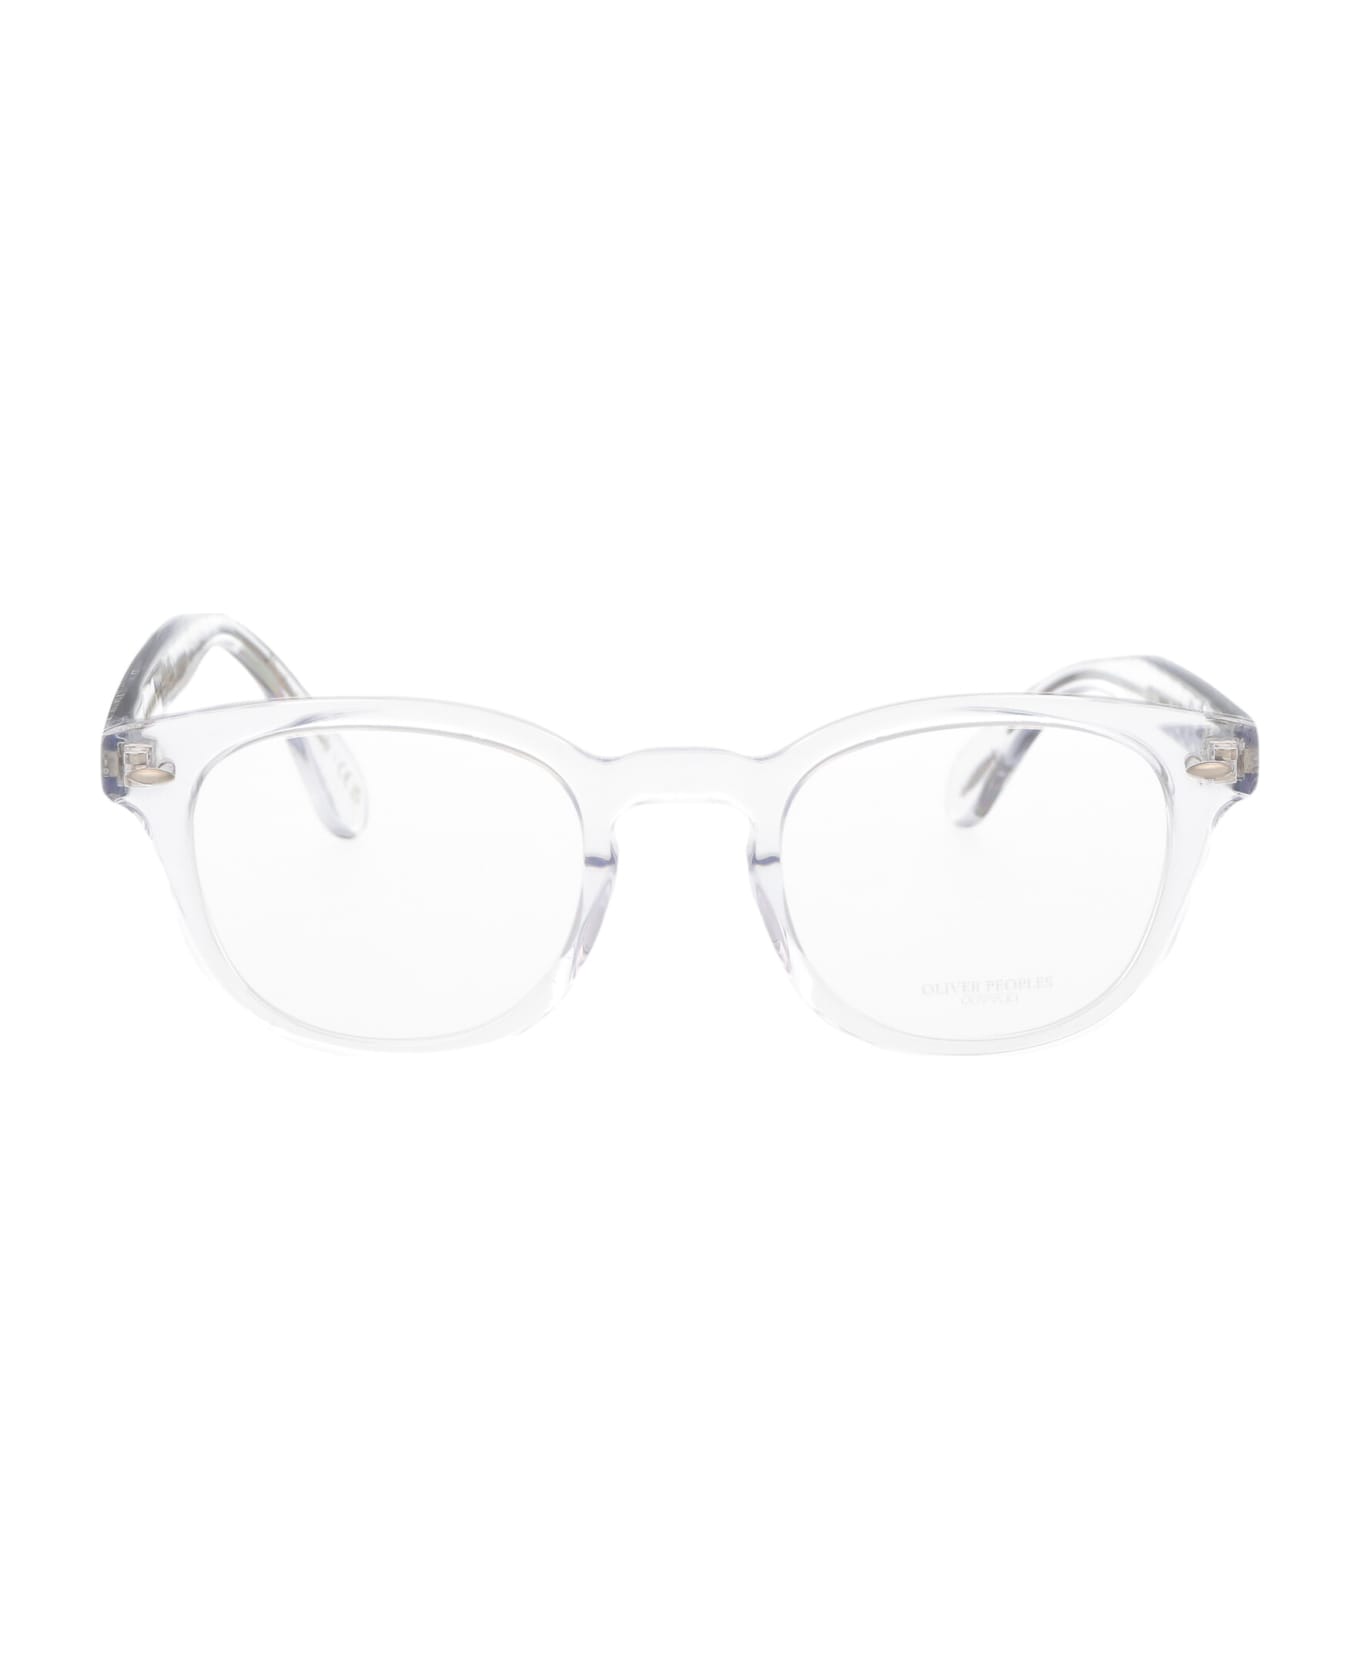 Oliver Peoples Sheldrake Glasses - 1762 Crystal アイウェア